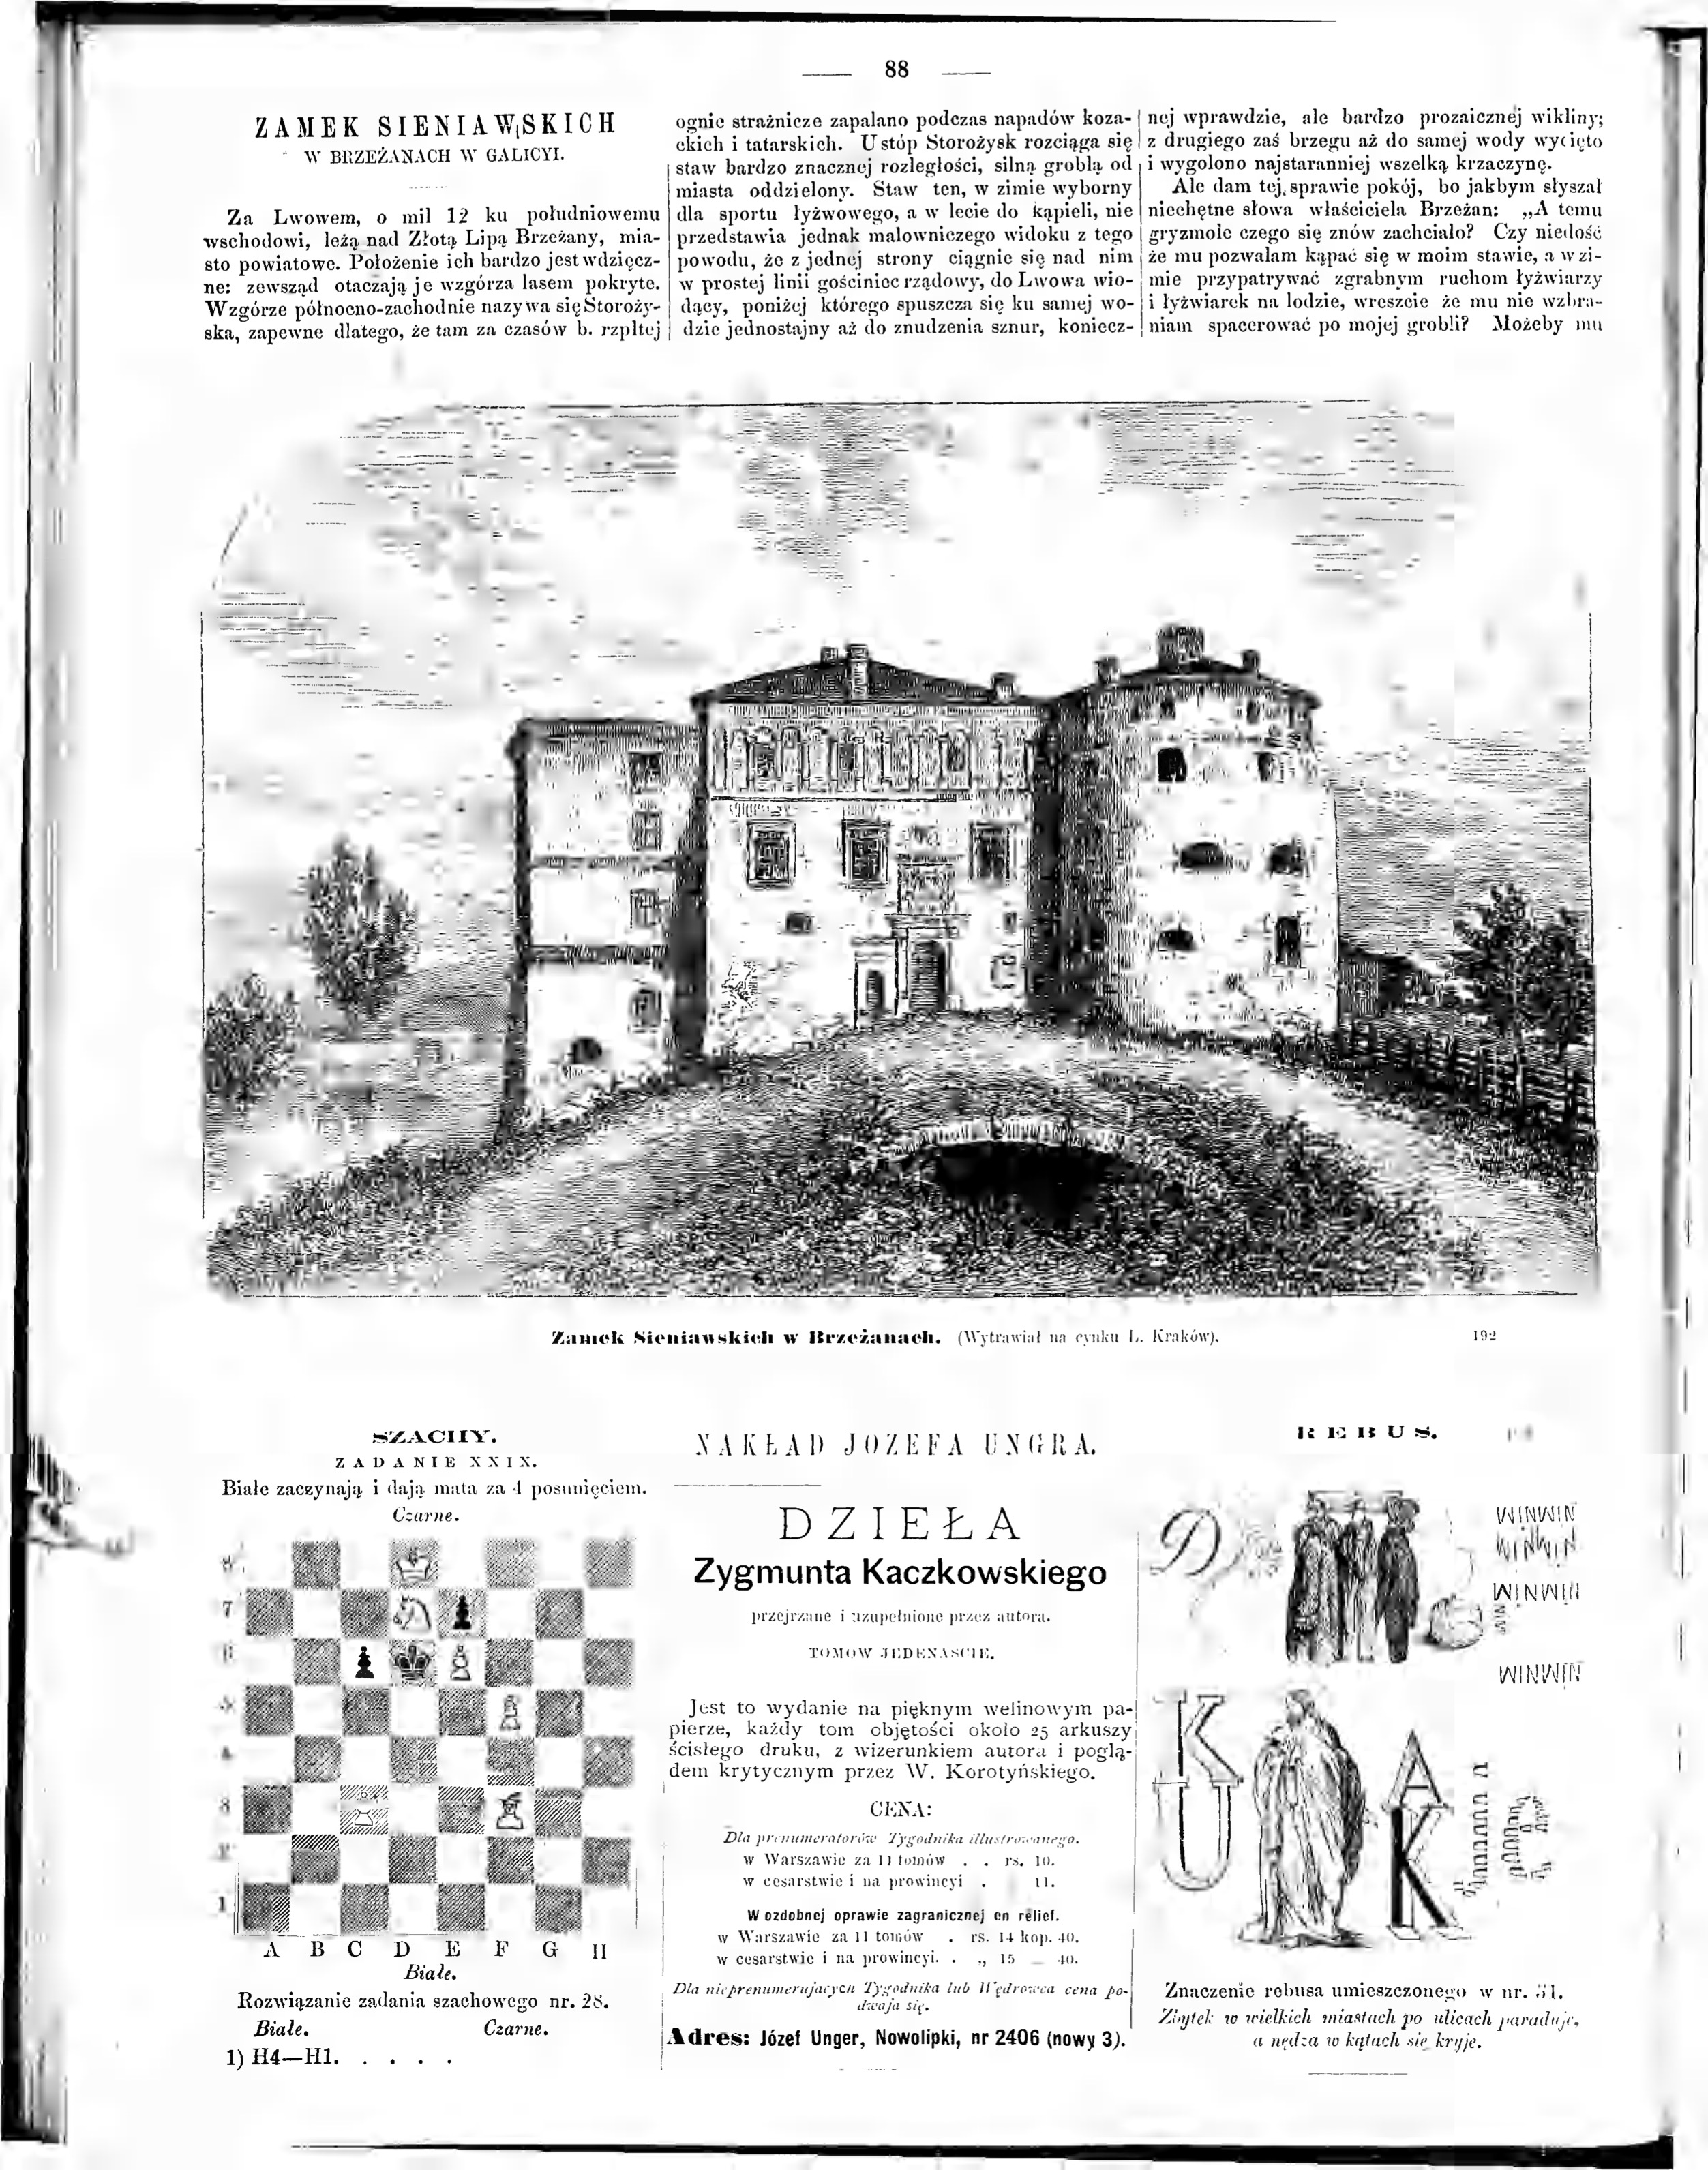 Fotografia przedstawiająca Description of Sieniawski Castle in Brzeżany